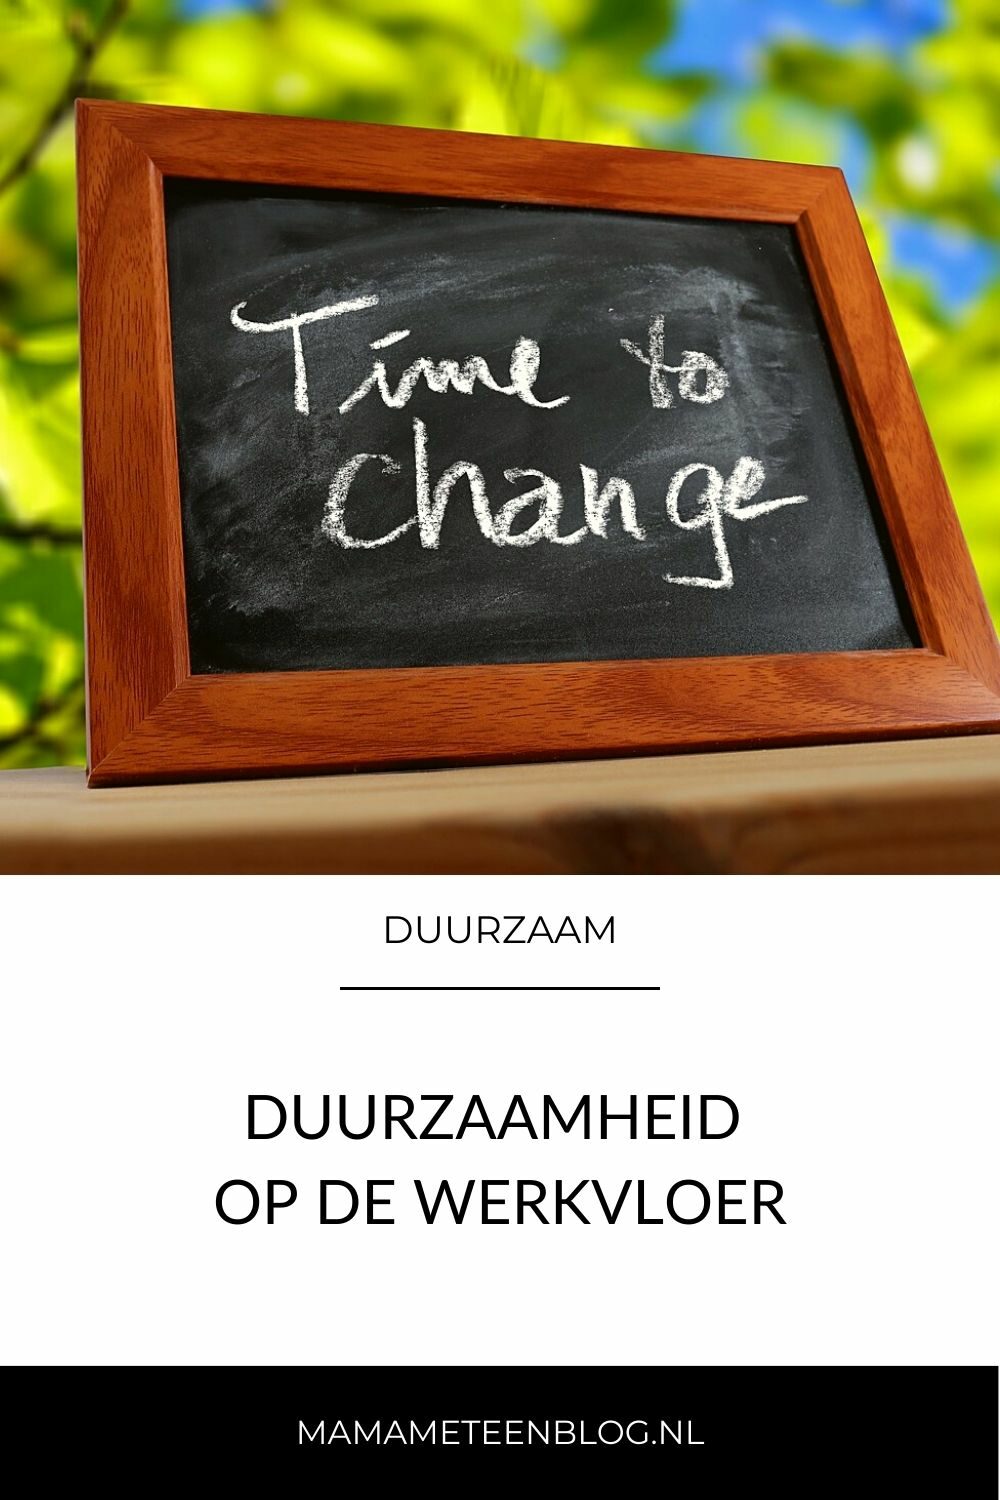 duurzaamheid op de werkvloer mamameteenblog.nl